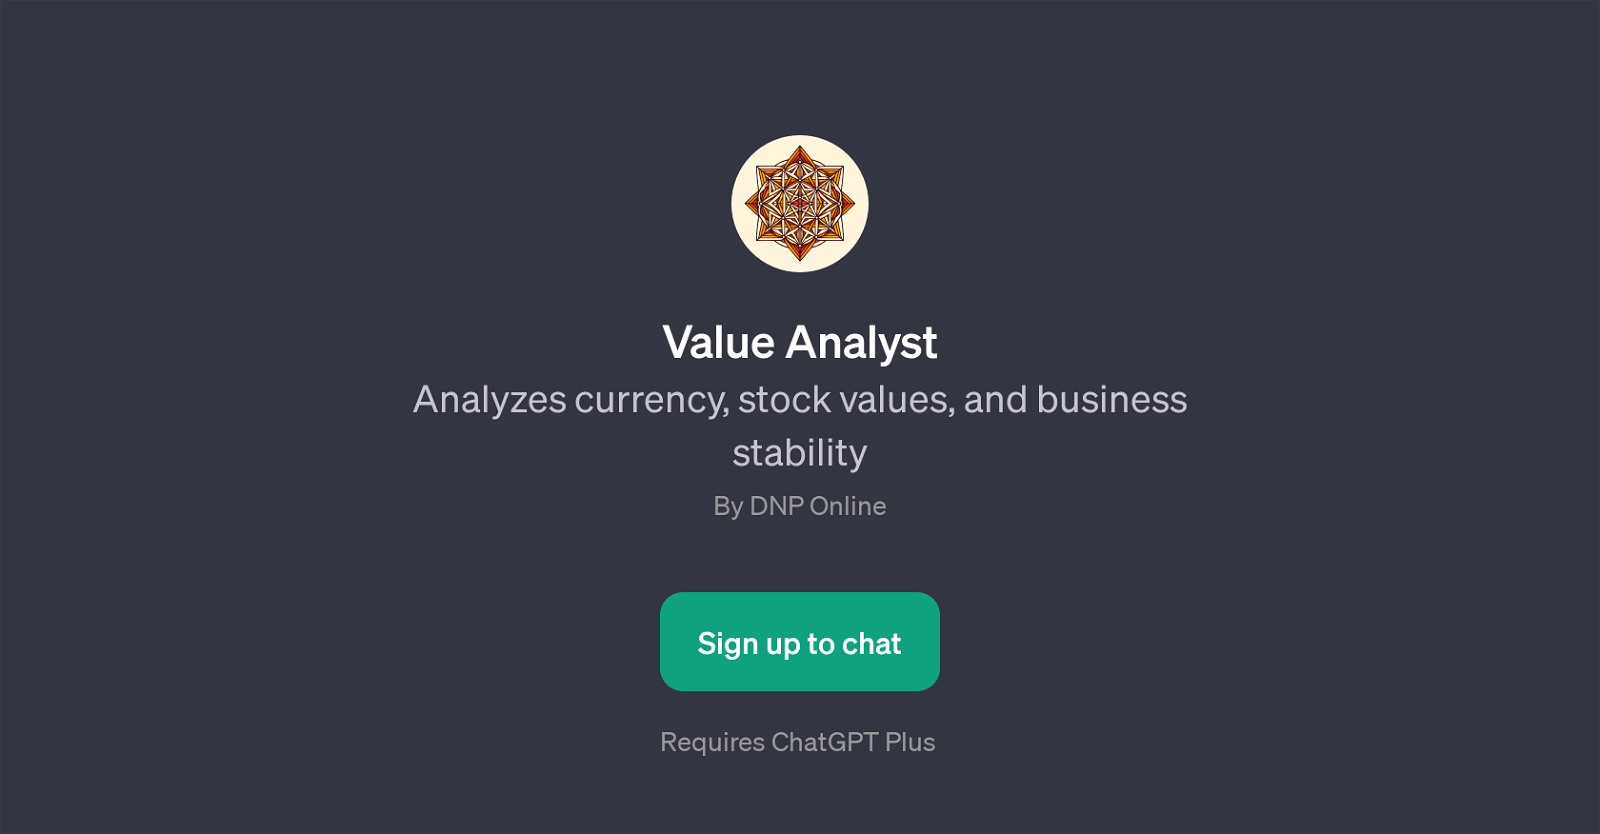 Value Analyst website